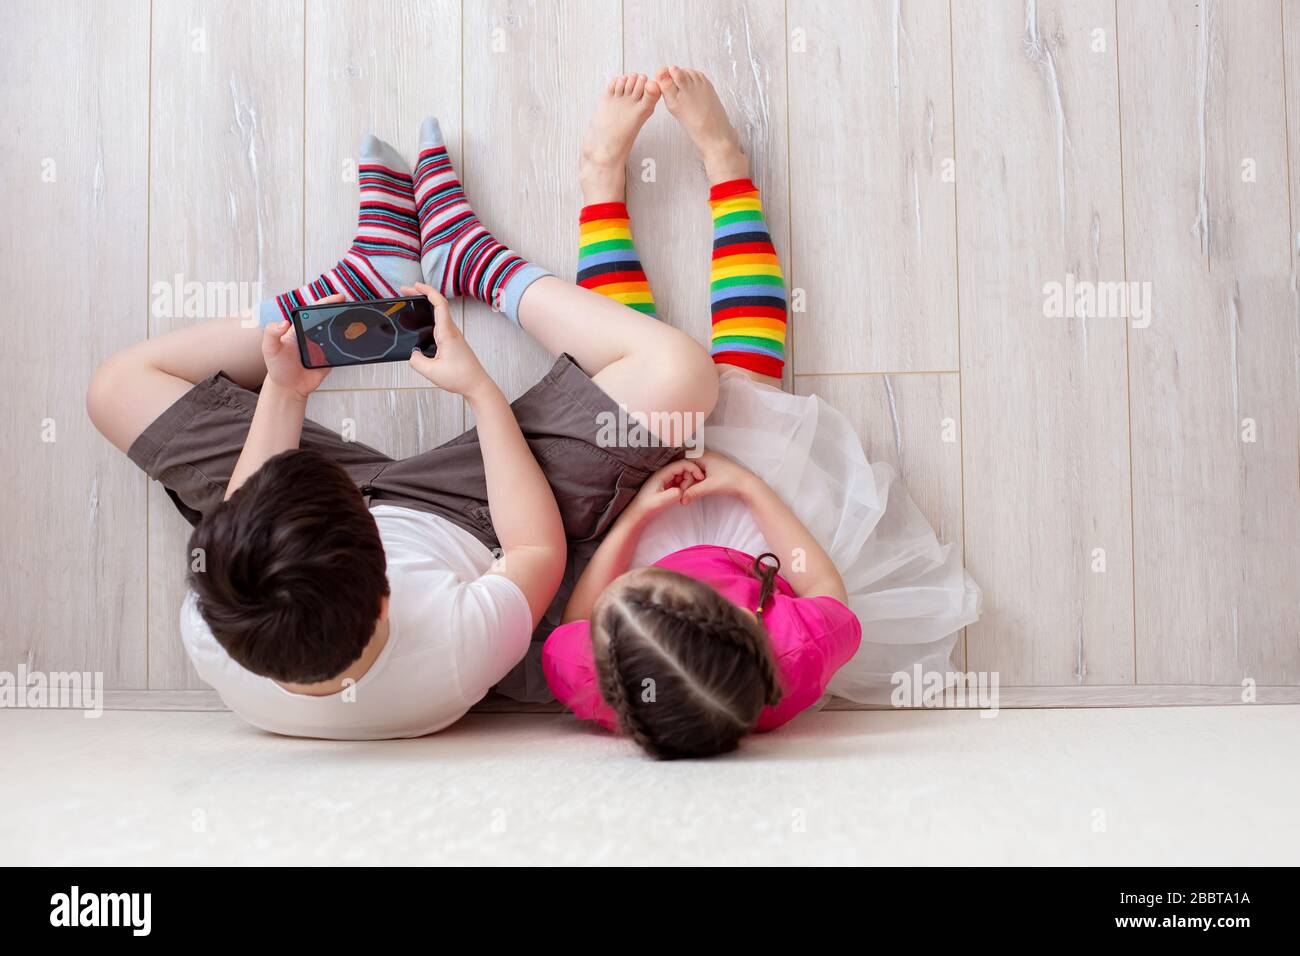 Dos niños, hermano y hermana, están sentados en el suelo contra la pared,  las piernas con calcetines largos a rayas brillantes y jugando con un  smartphone. Vista superior Fotografía de stock -